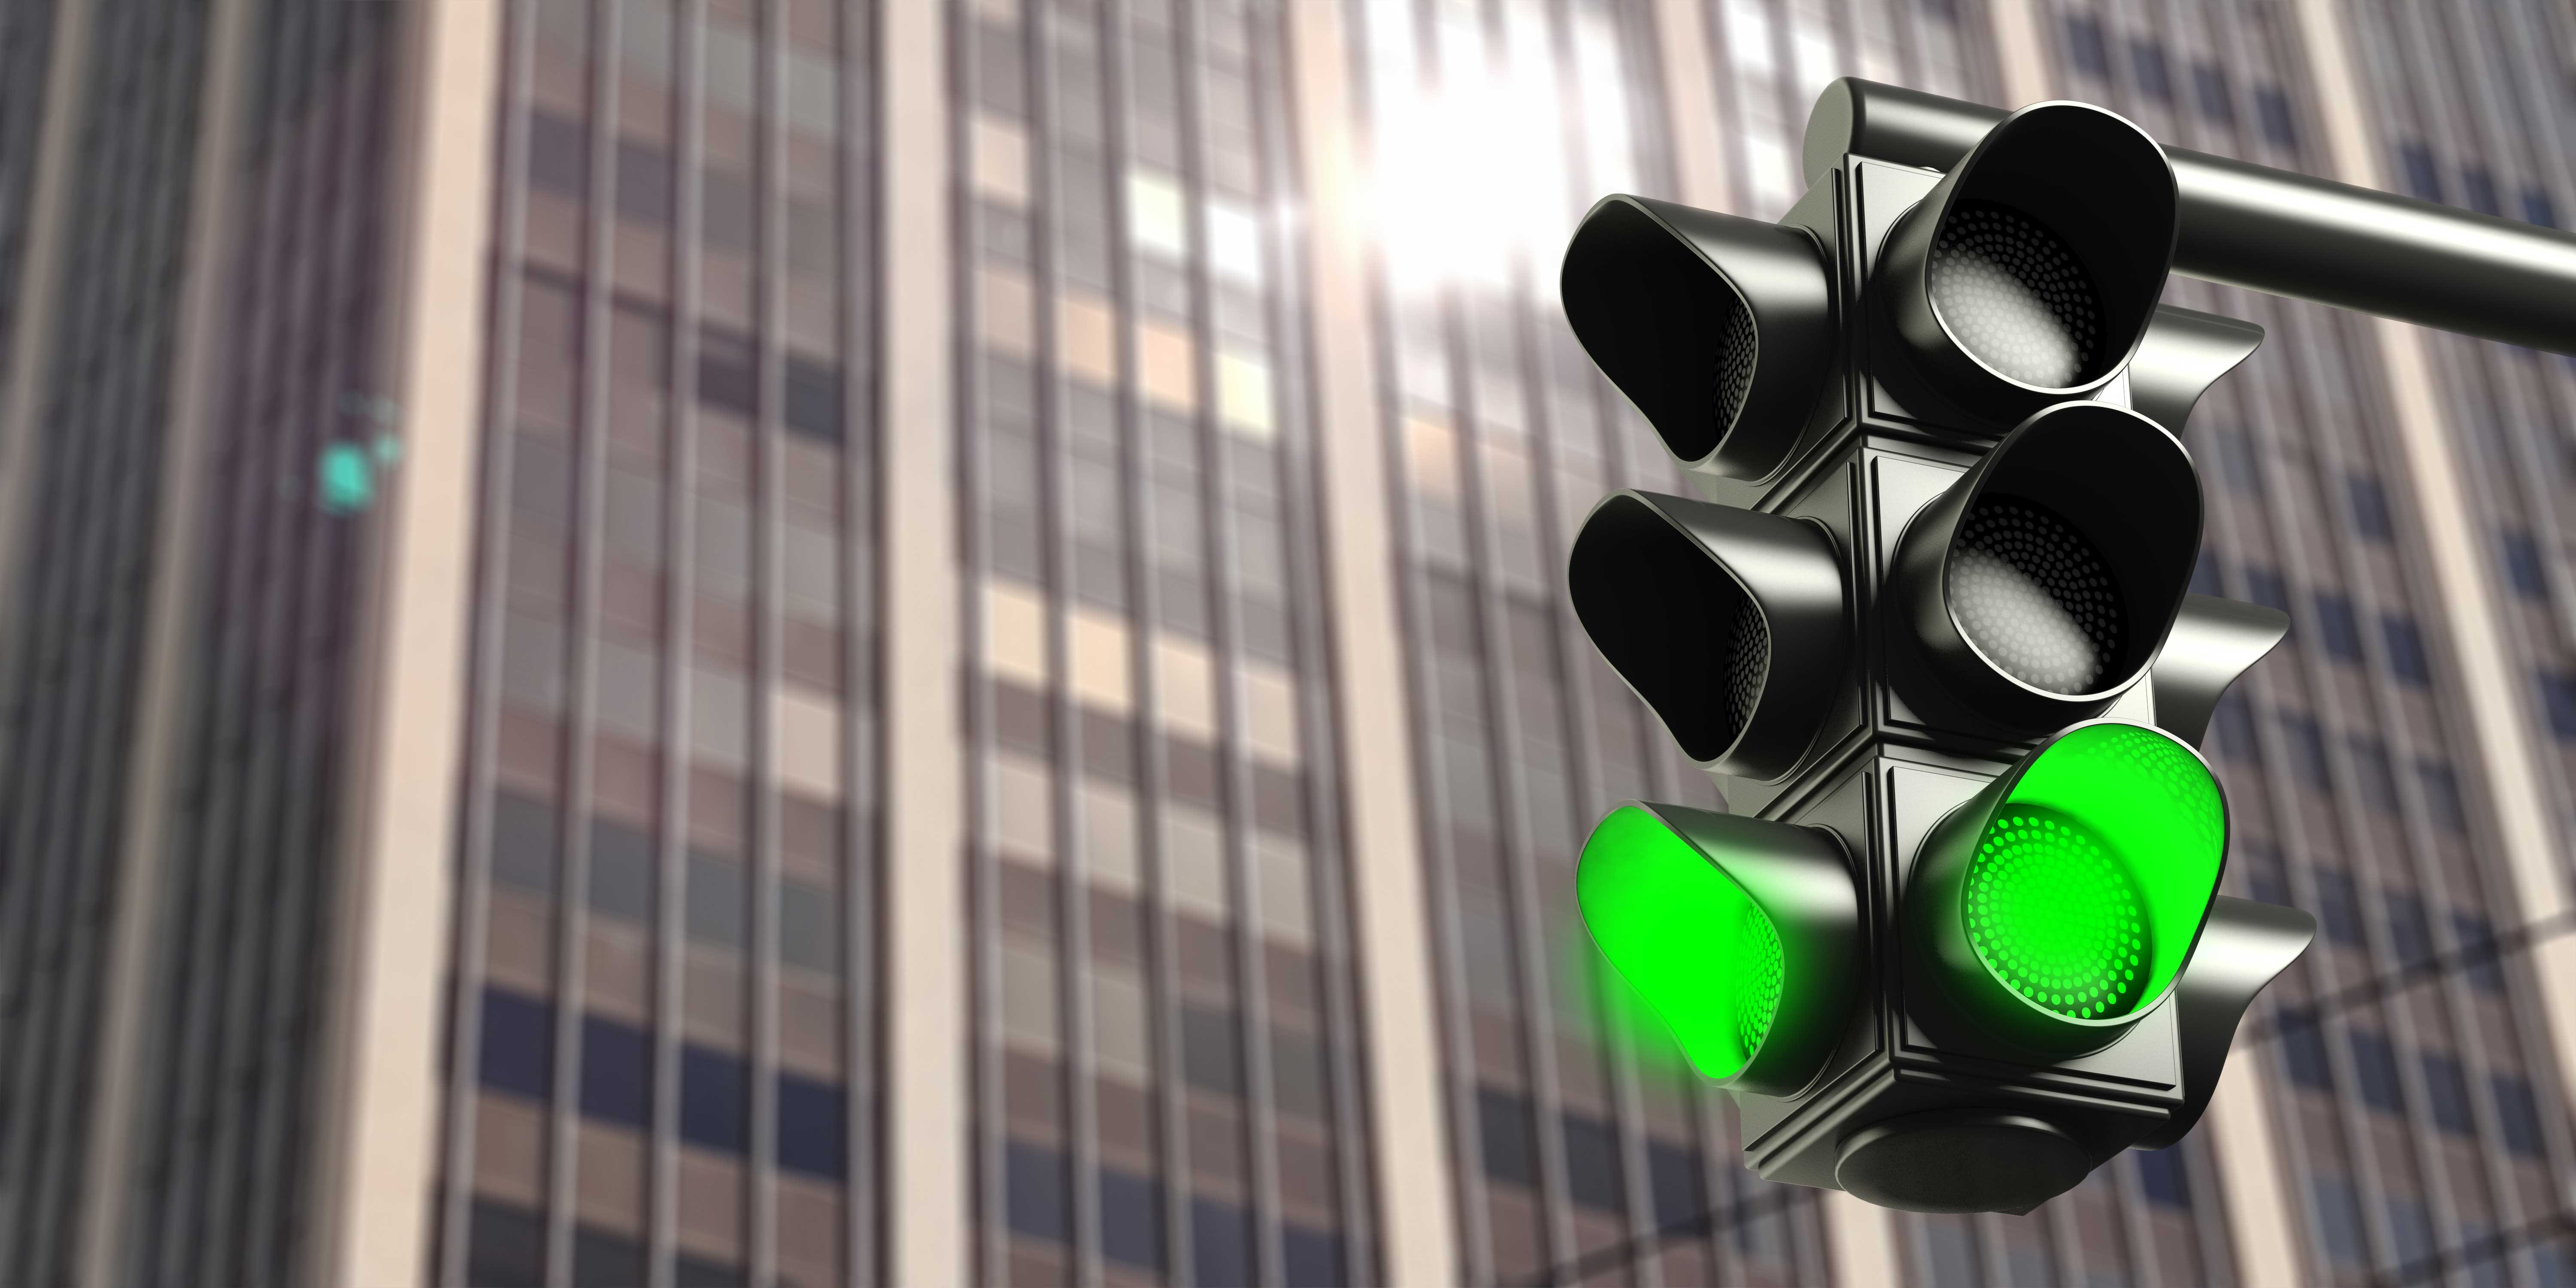 Светофоры всегда зеленые. Светофор. Зеленый светофор. Зеленый сигнал светофора. Зеленый цвет светофора.